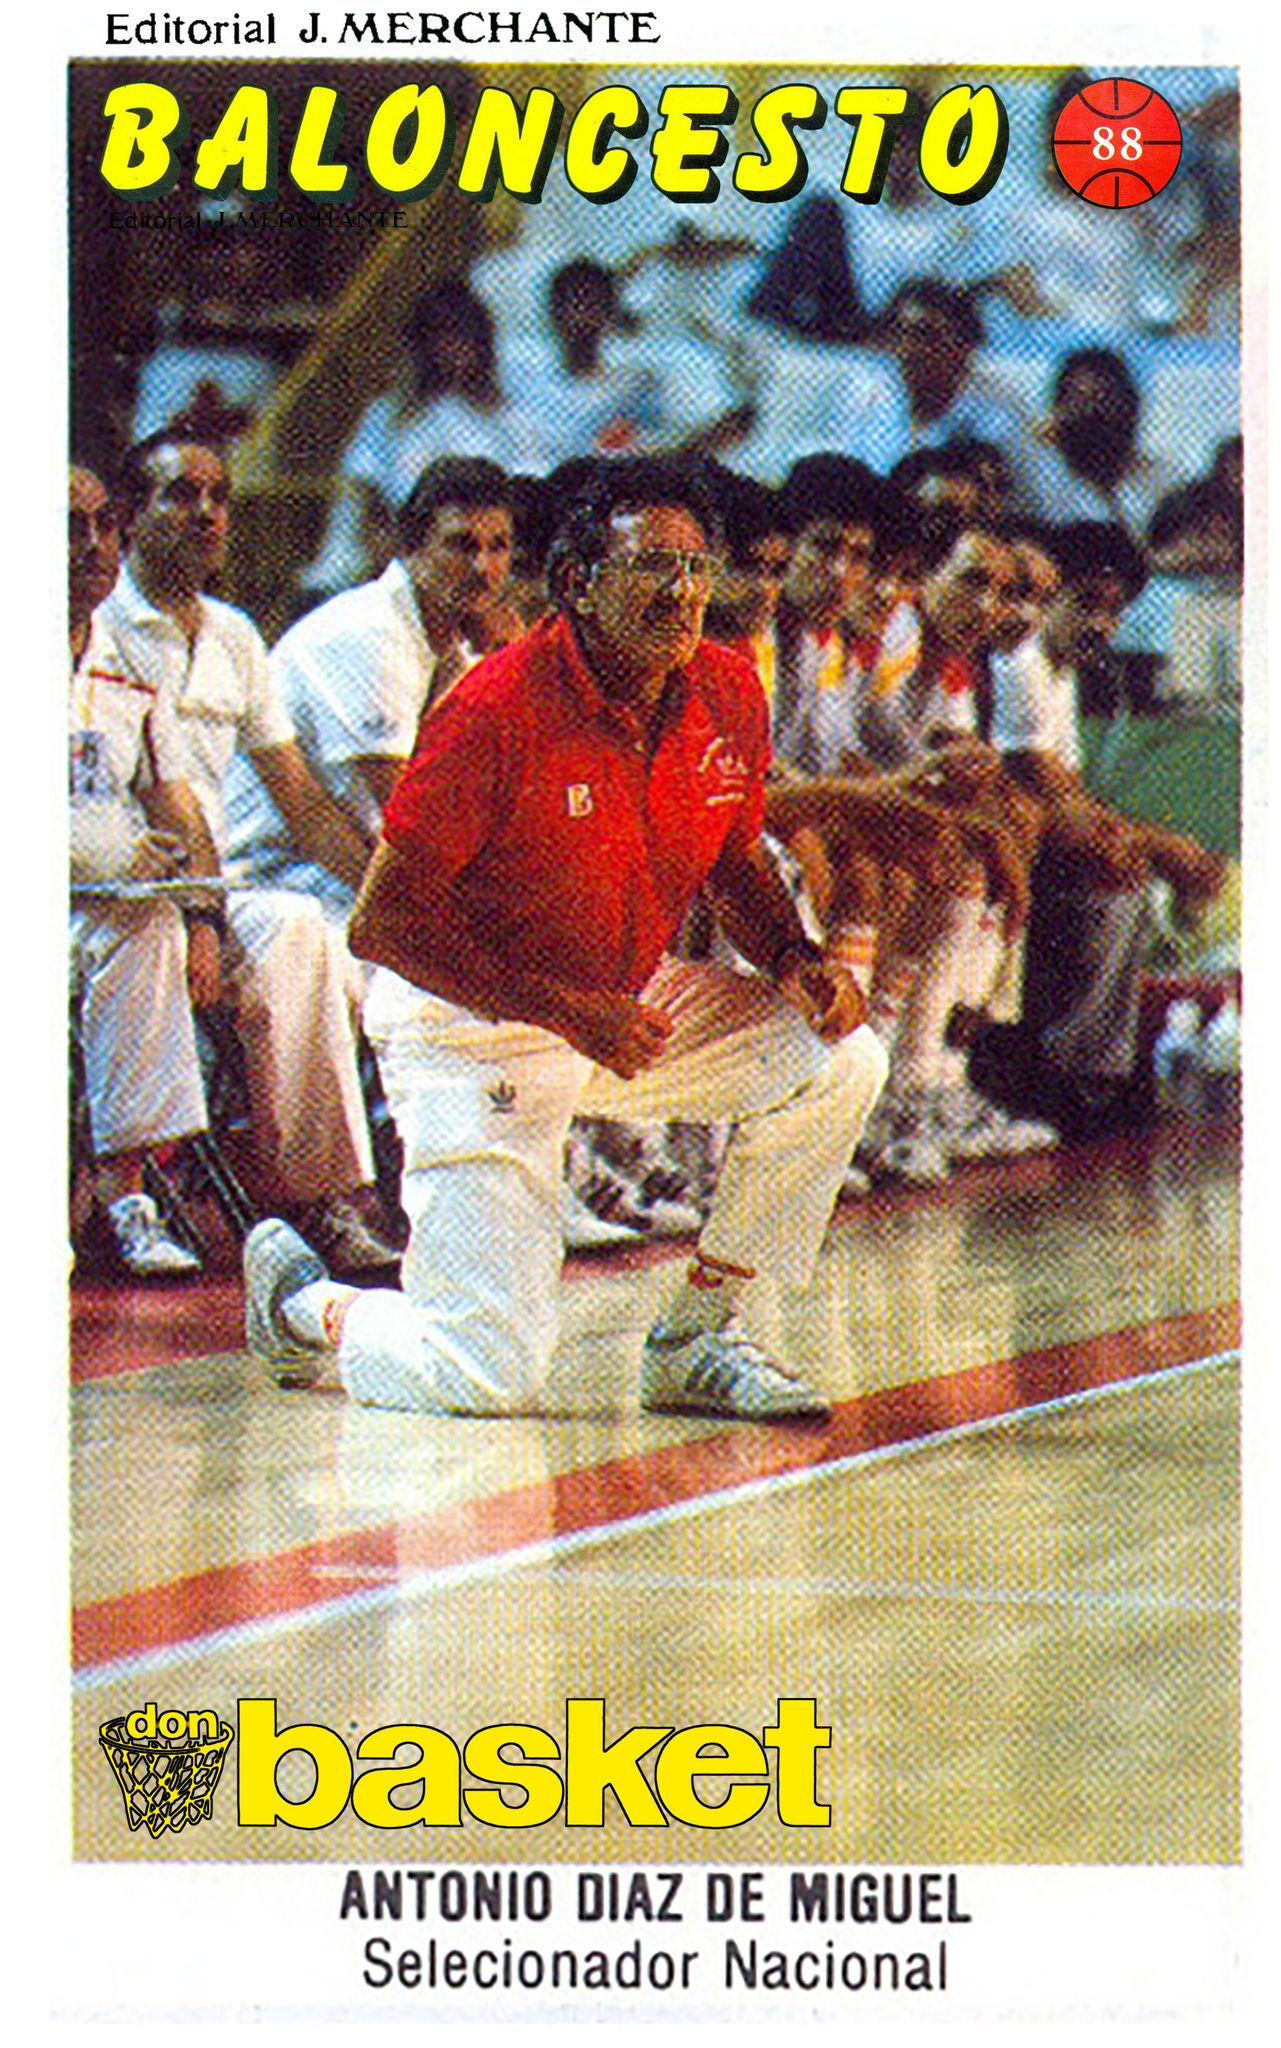 Baloncesto 88. Antonio Díaz Miguel (España) Editorial Merchante. 📸: Grupo de Facebook don basket.